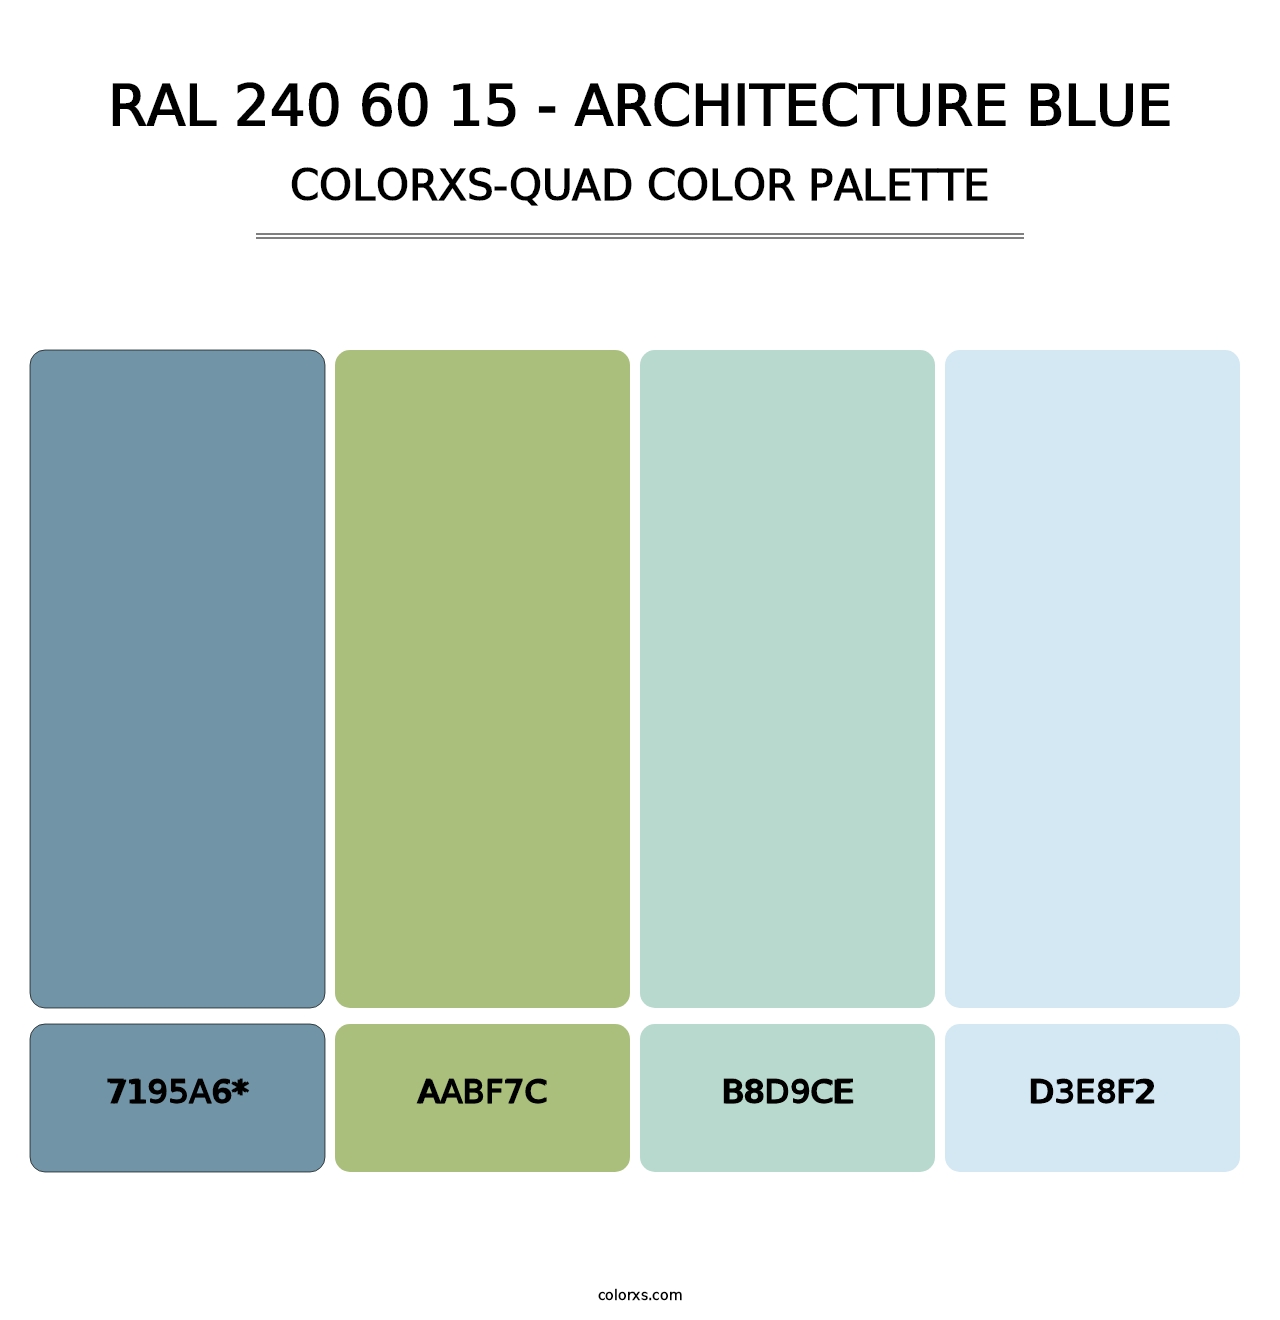 RAL 240 60 15 - Architecture Blue - Colorxs Quad Palette